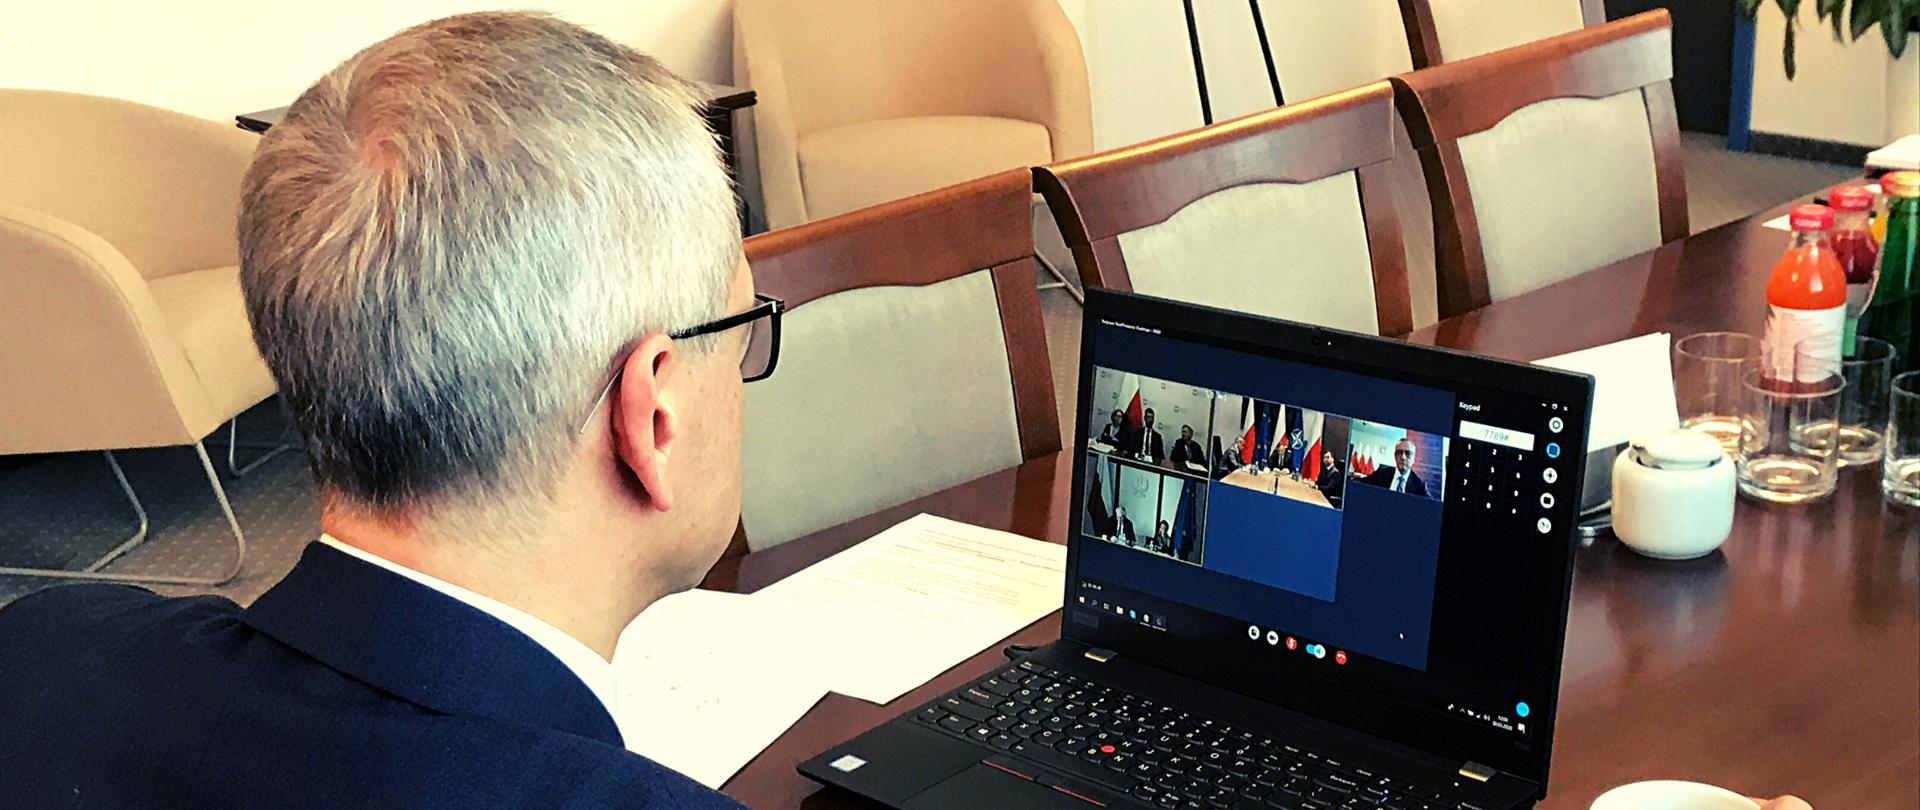 Marek Zagórski w gabinecie. Siedzi przy stole, na którym stoi laptop. Na ekranie widać okienka z wizerunkami osób biorących udział w wideokonferencji. Ujęcie z zza ramienia ministra.